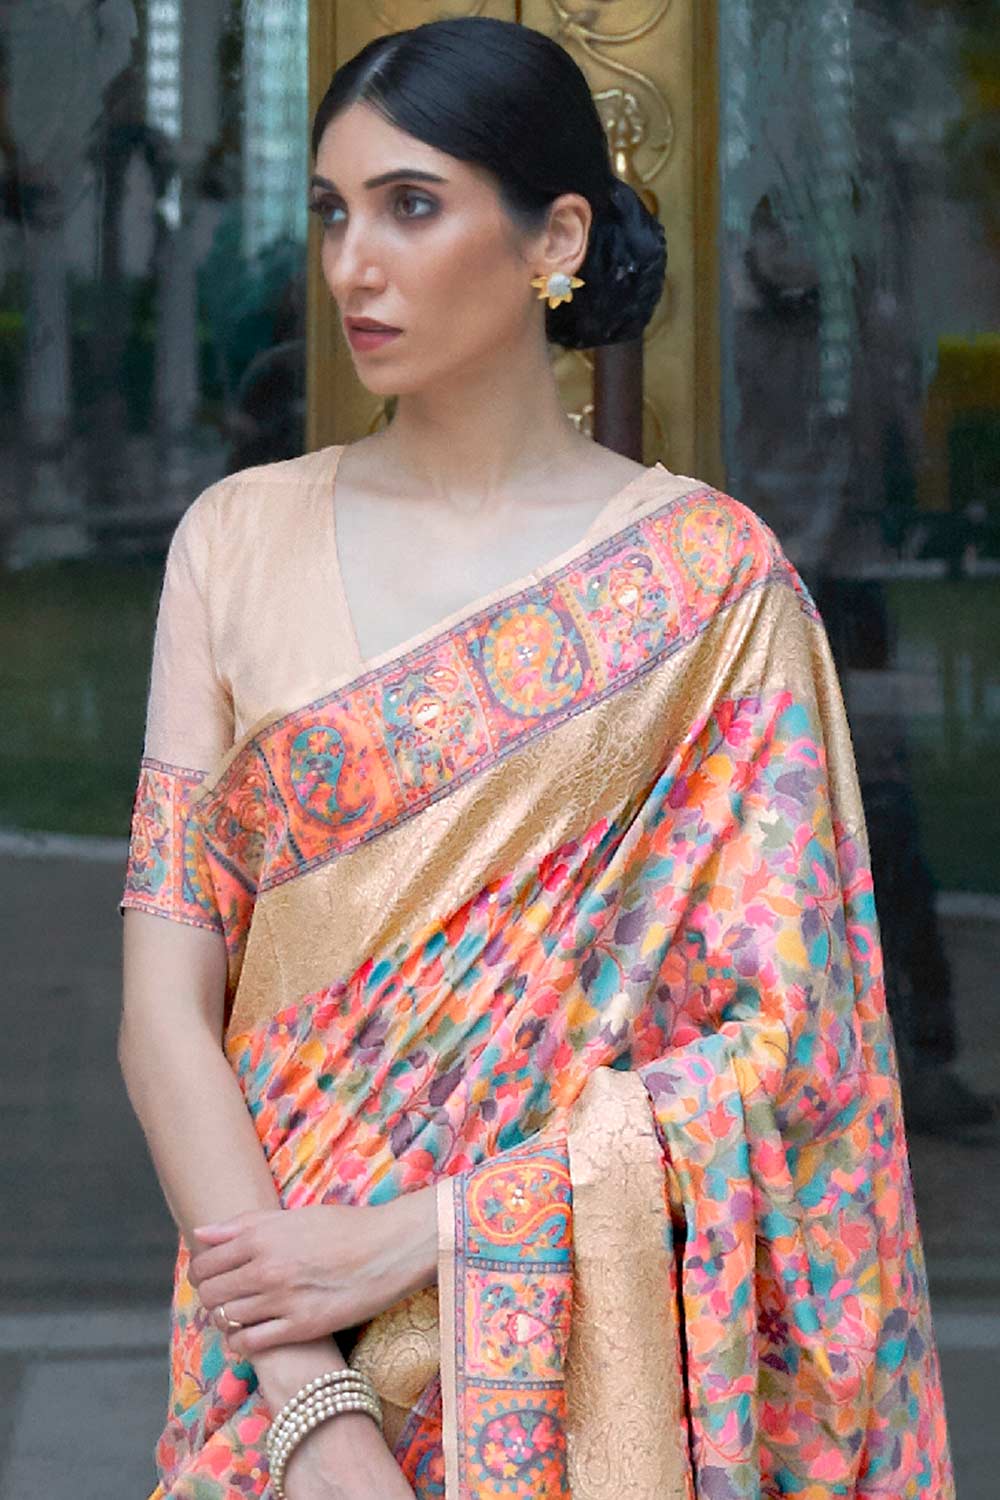 Tina Peach Silk Blend Floral Woven Design Phulkari One Minute Saree